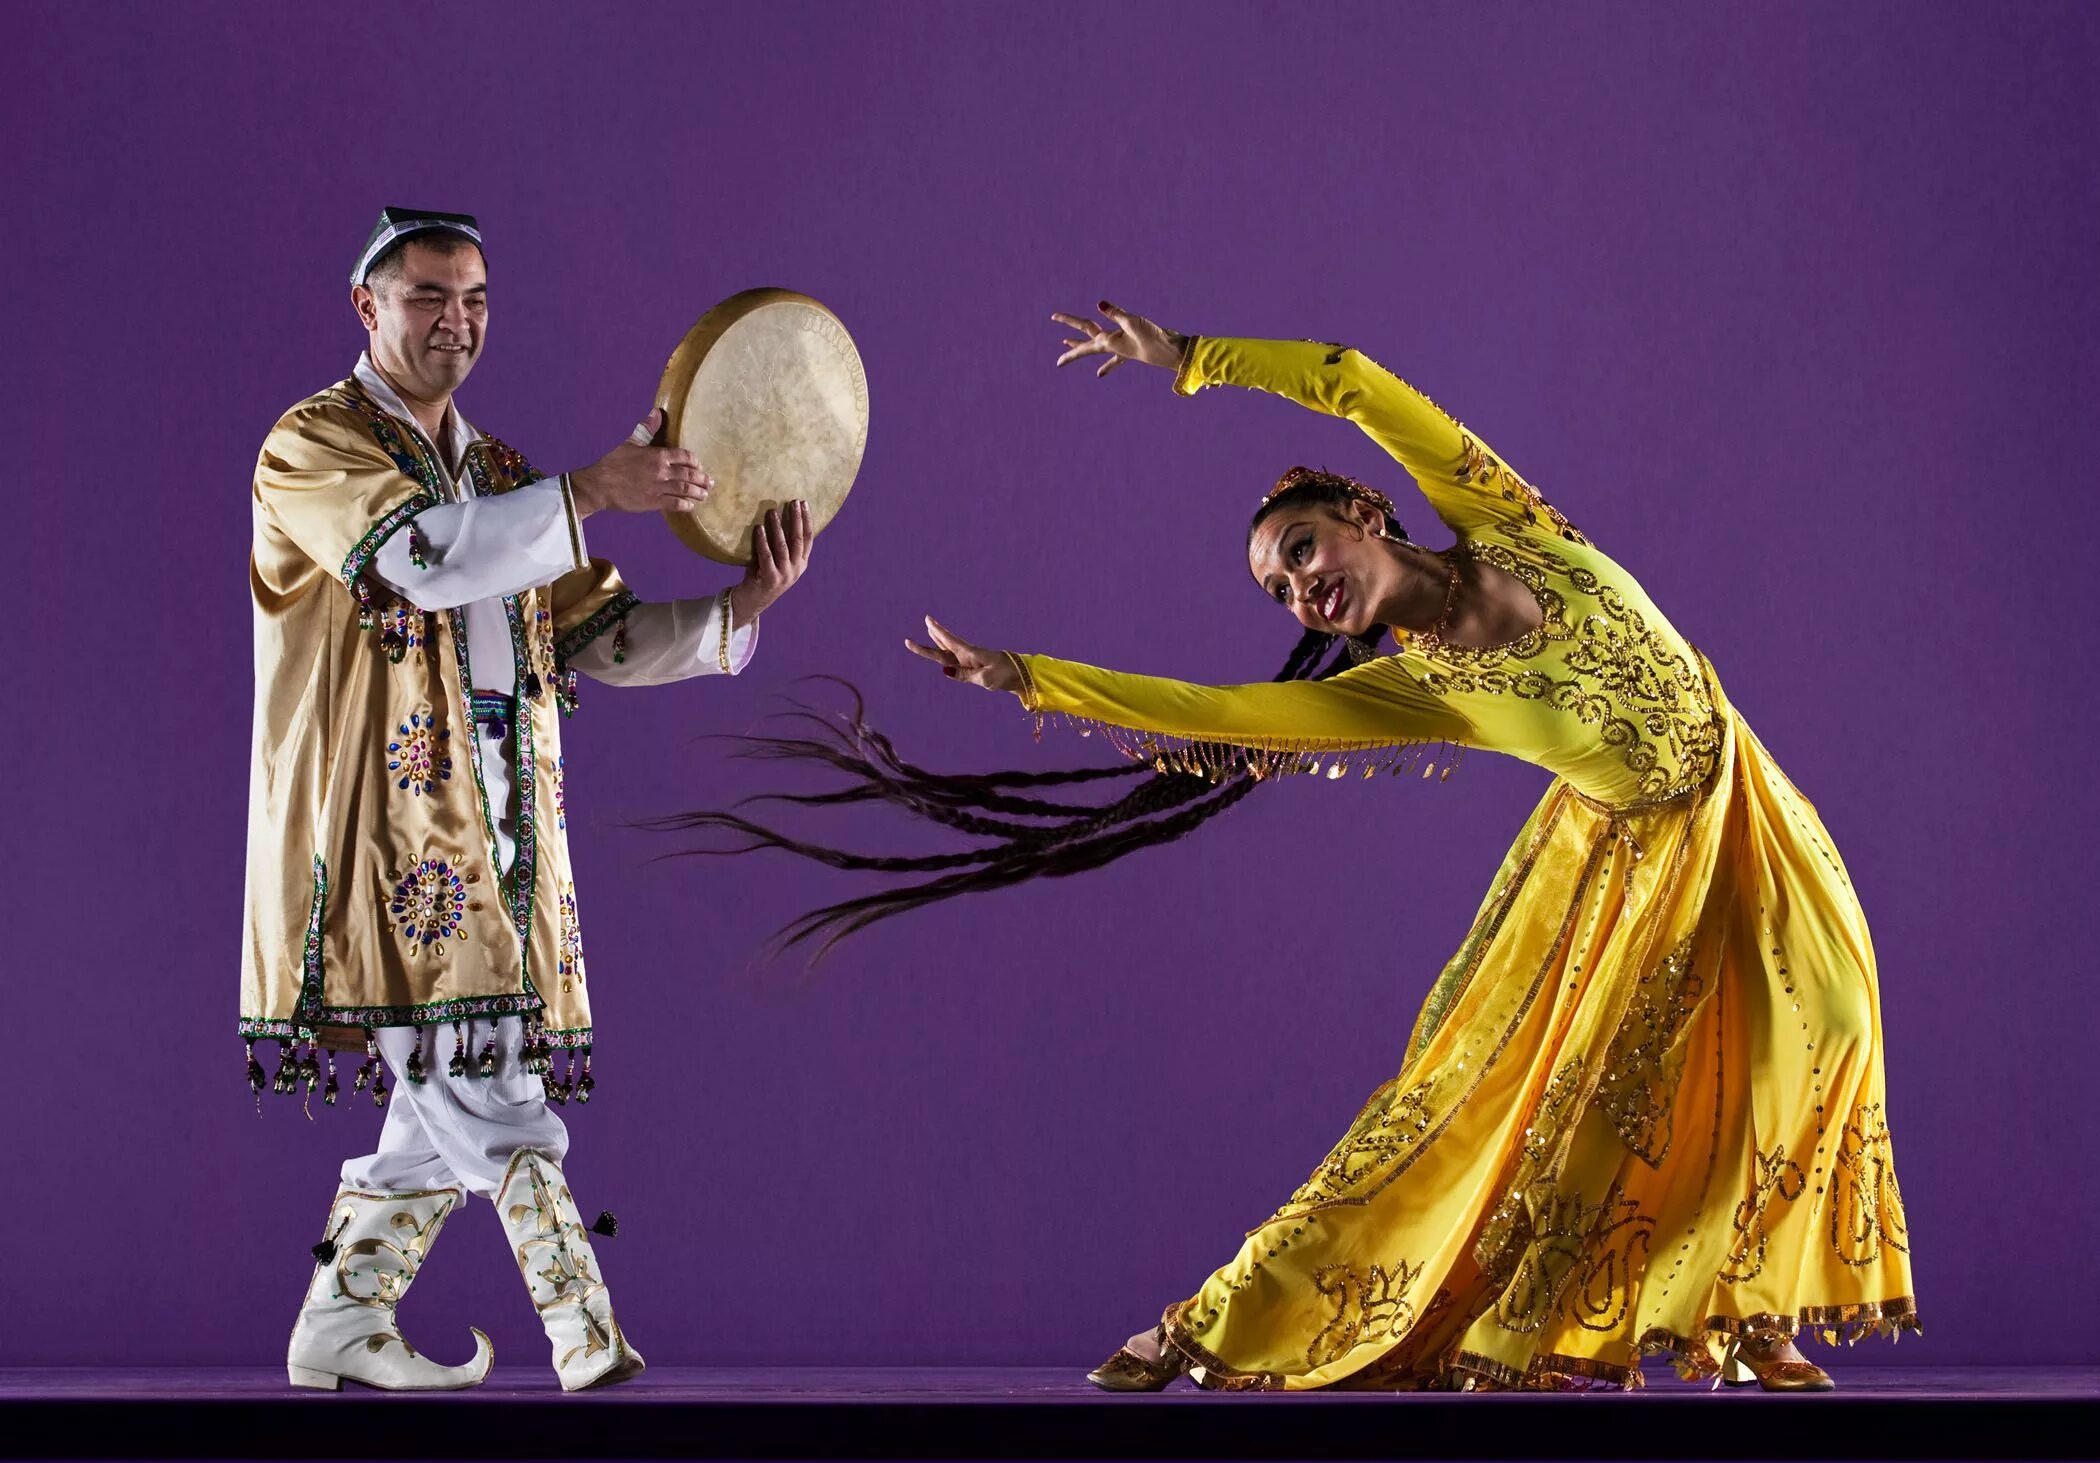 Uzb live. Узбекский национальный костюм Хорезм. Узбекский танец. Узбекский народный танец. Узбекские национальные танцы.